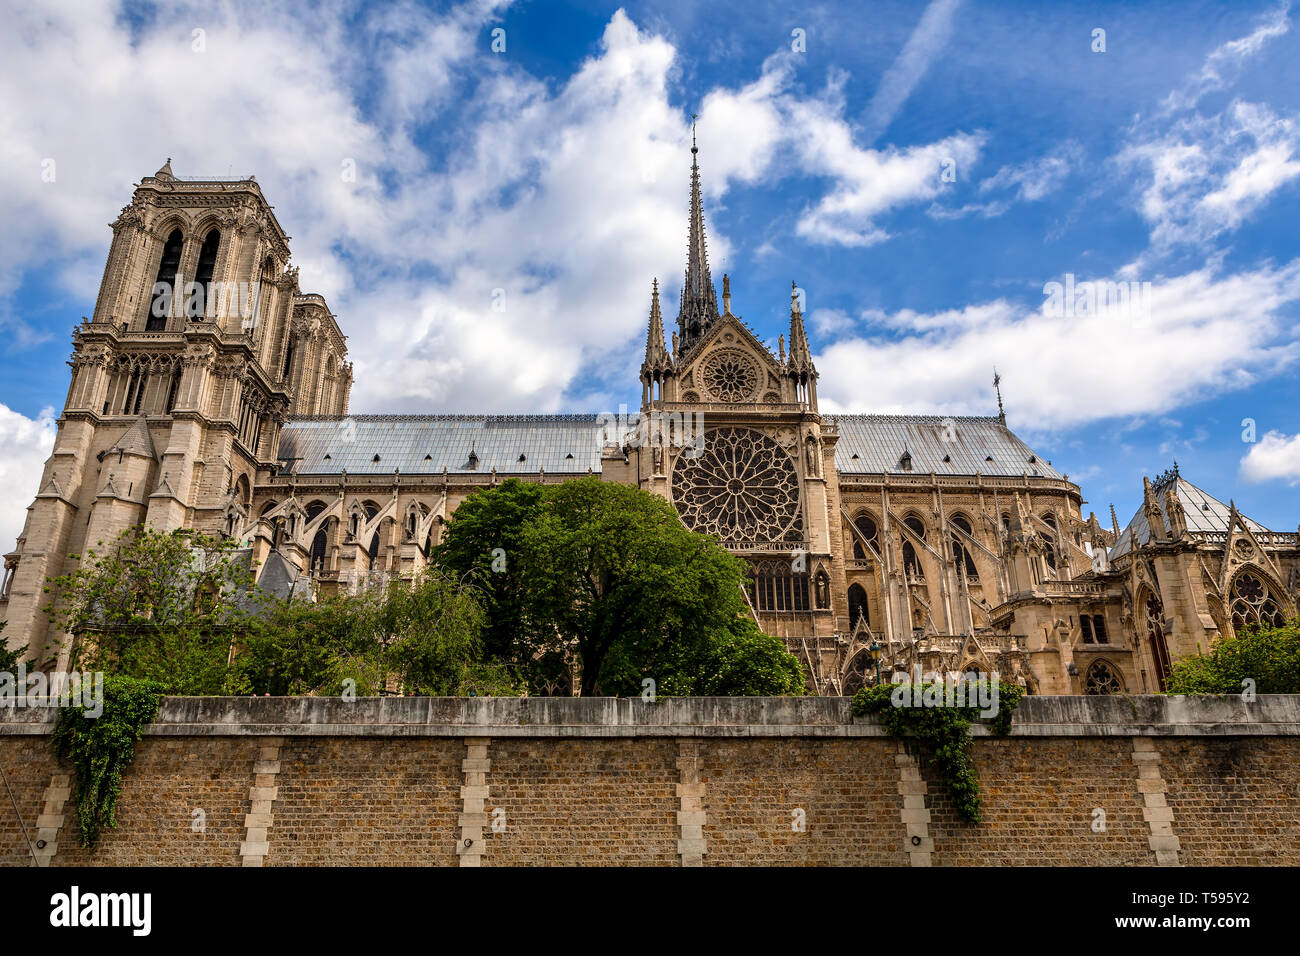 Célèbre la cathédrale Notre-Dame de Paris dans le cadre de ciel bleu avec des nuages blancs. Banque D'Images